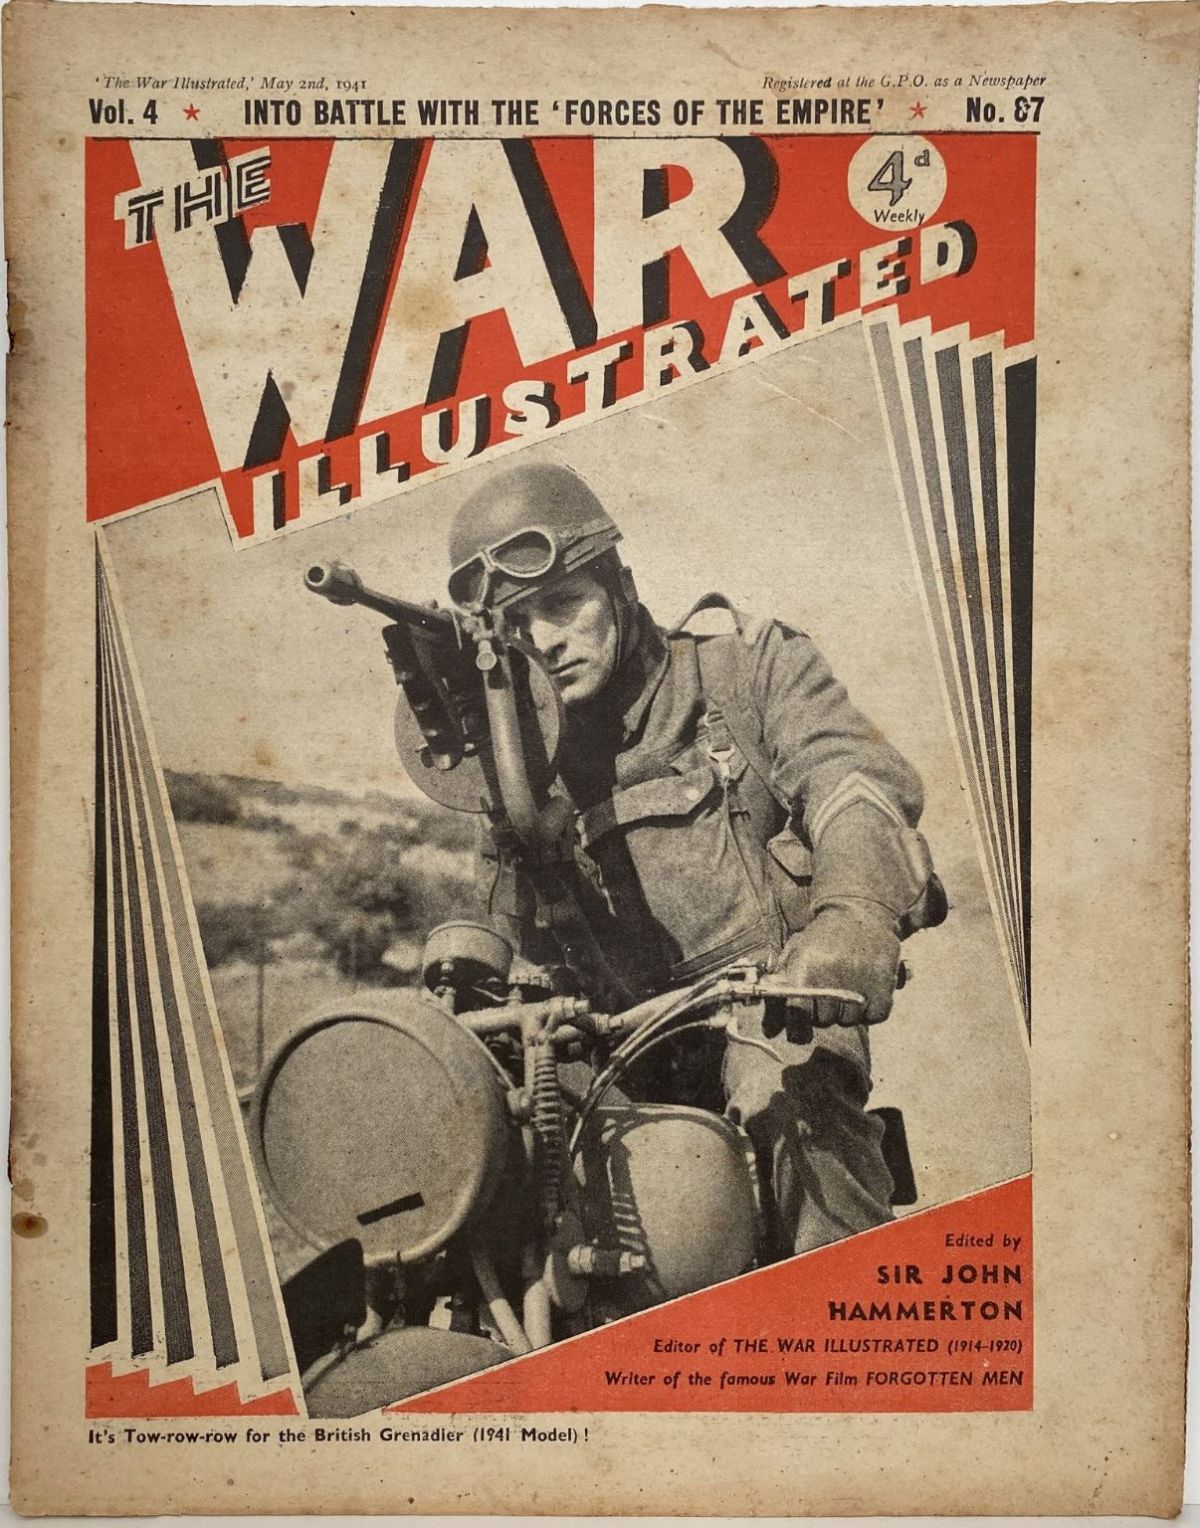 THE WAR ILLUSTRATED - Vol 4, No 87, 2nd May 1941